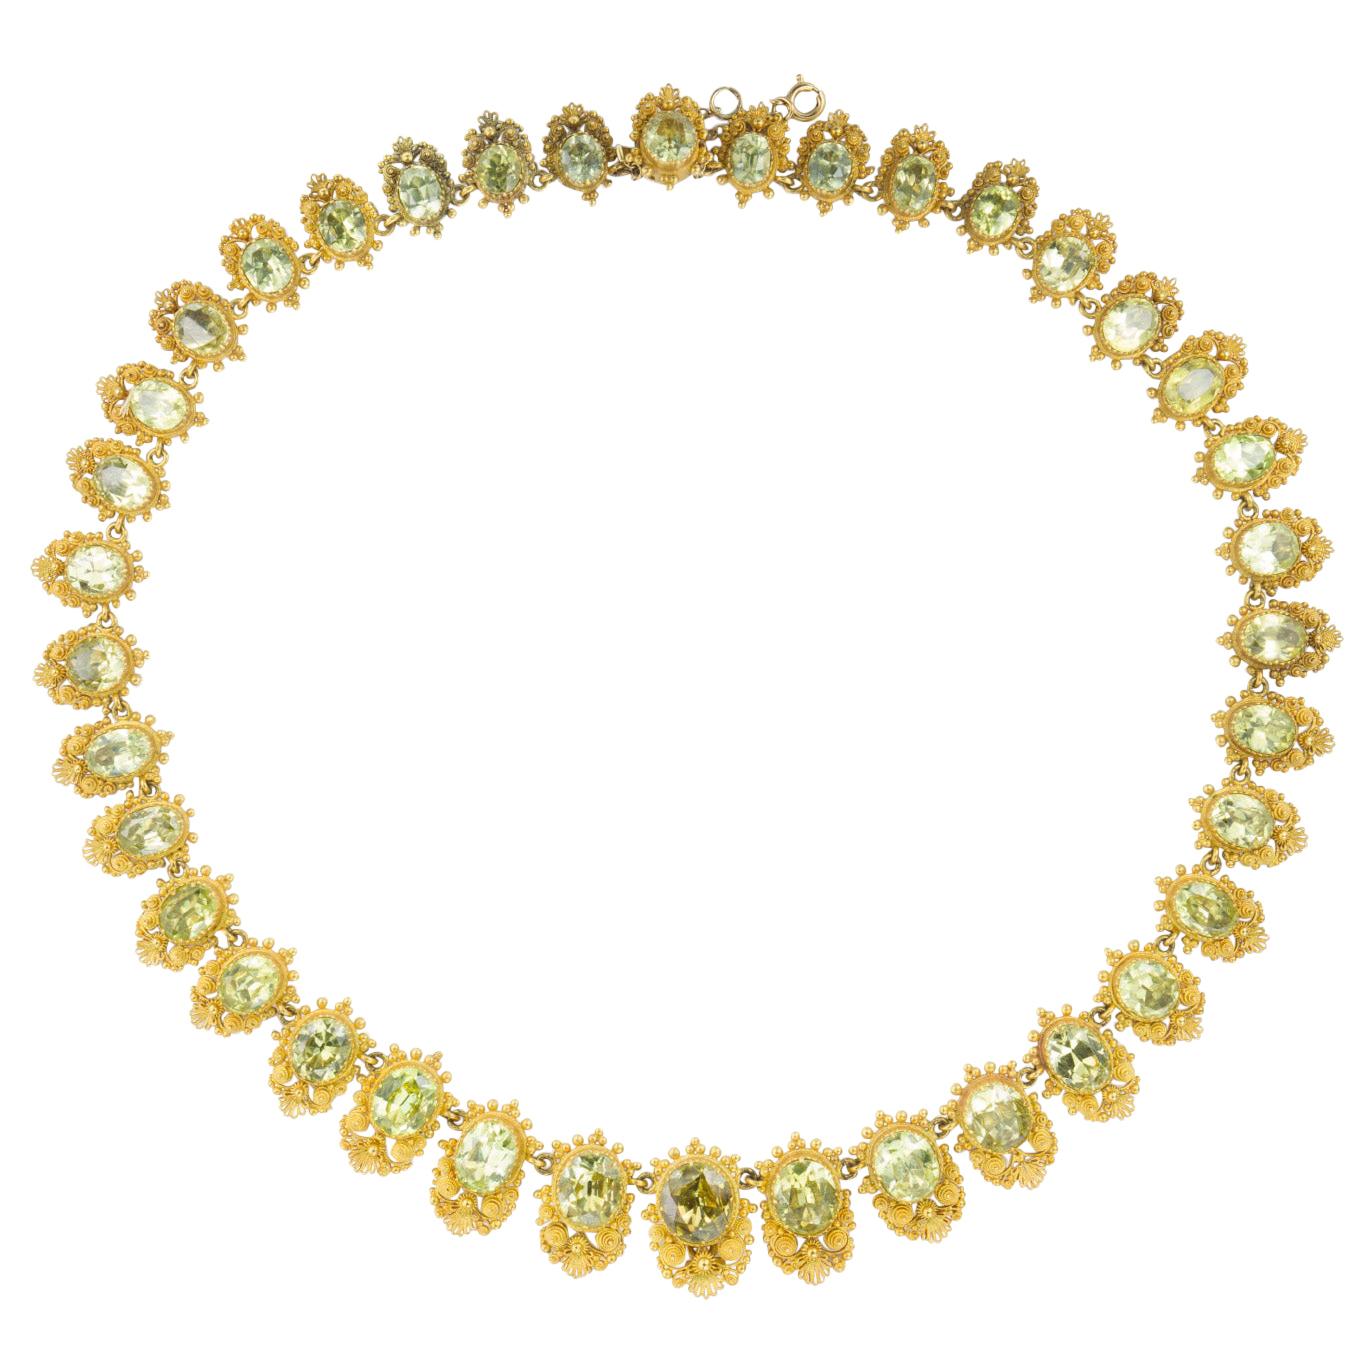 Frühviktorianische Halskette aus Chrysoberyll und Gelbgold